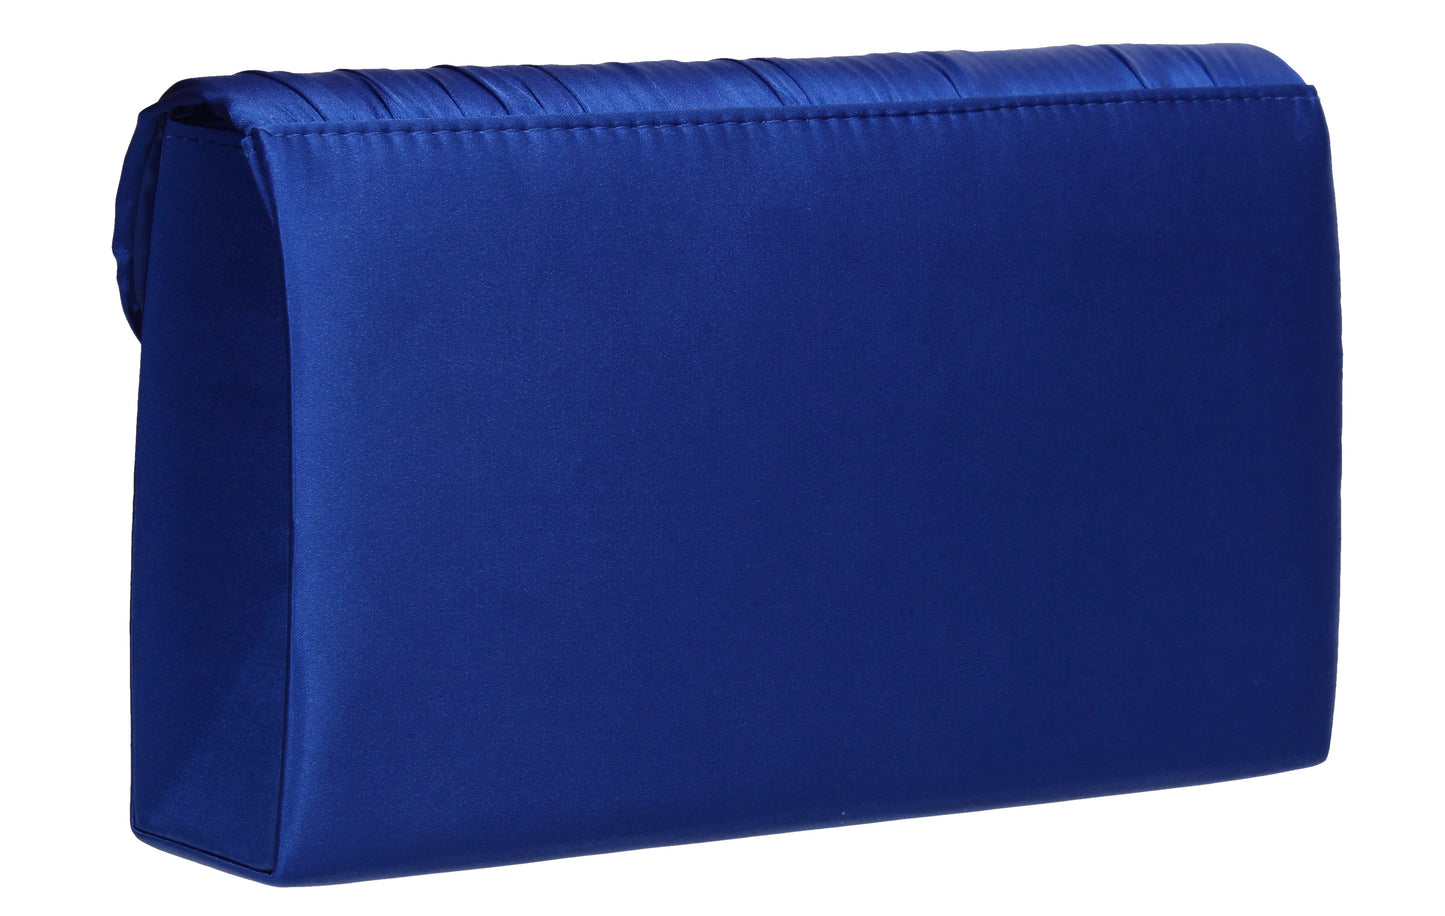 Chantel Beautiful Satin Envelope Clutch Bag Royal Blue